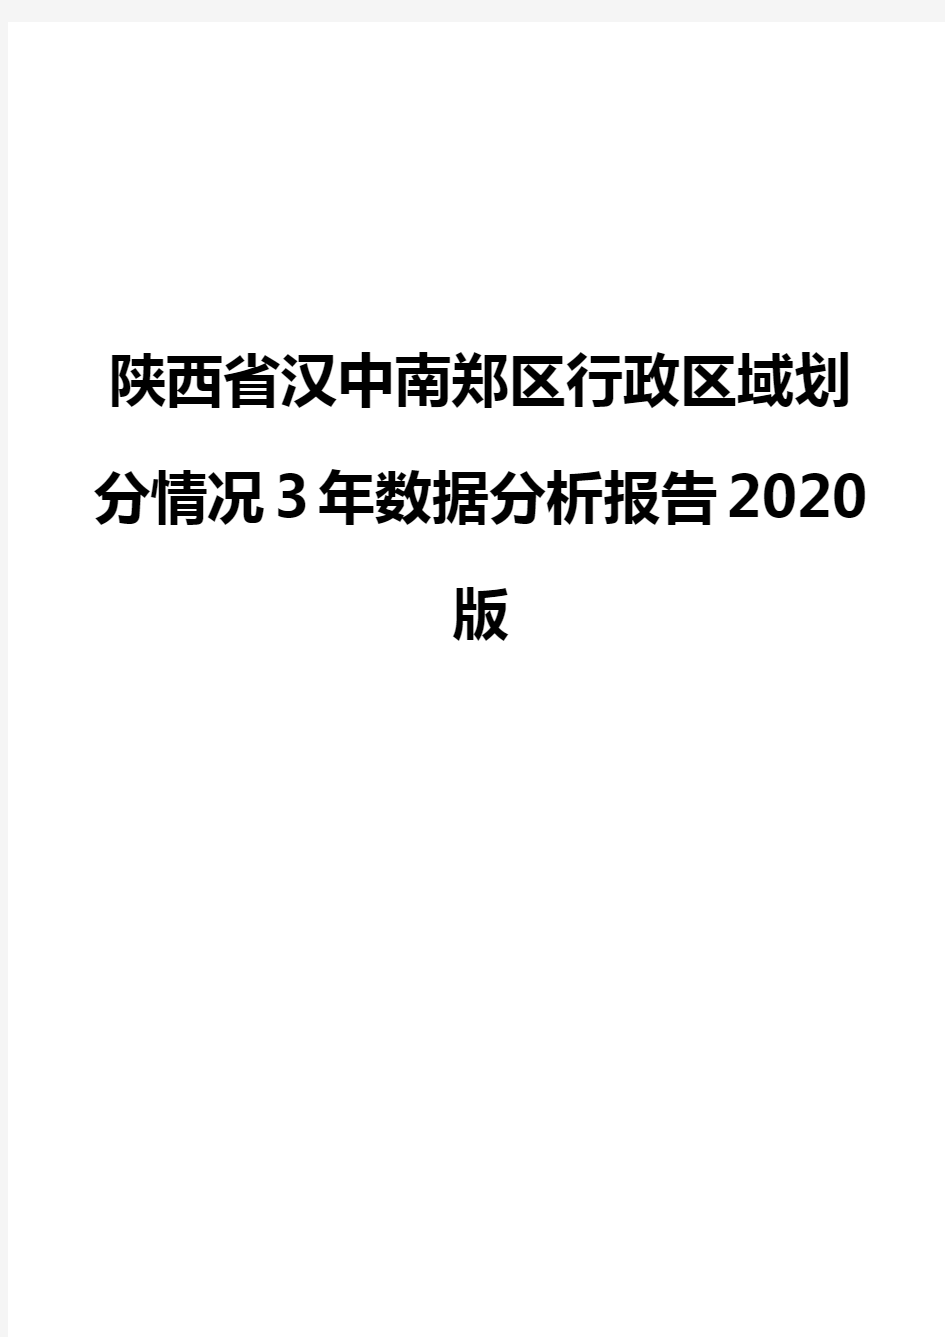 陕西省汉中南郑区行政区域划分情况3年数据分析报告2020版